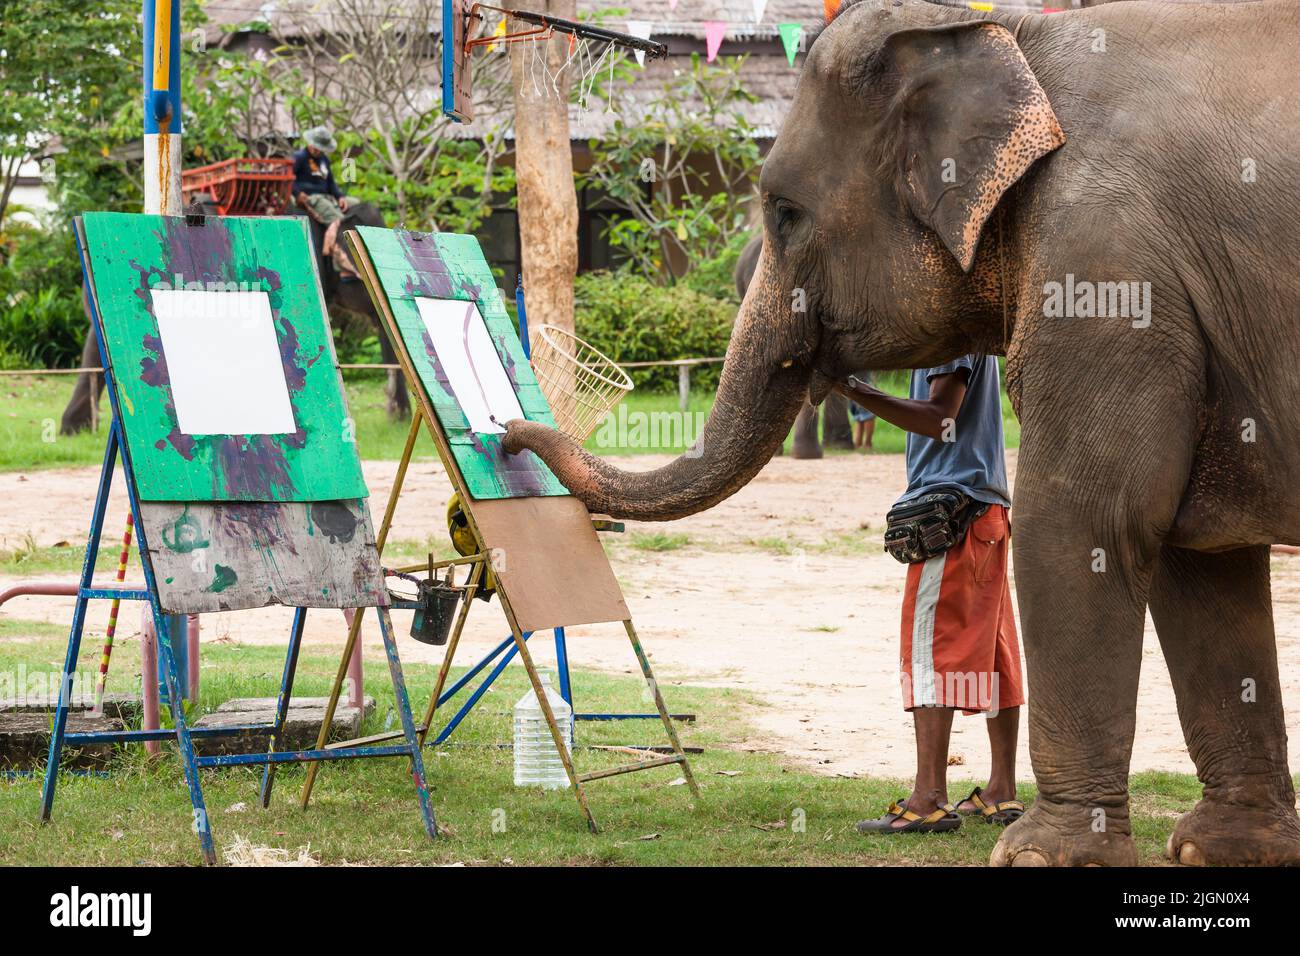 Elephant Village, espectáculo de elefantes, pintura, actuación, Surin, ISAN (Isaan), Tailandia, Sudeste Asiático, Asia Foto de stock